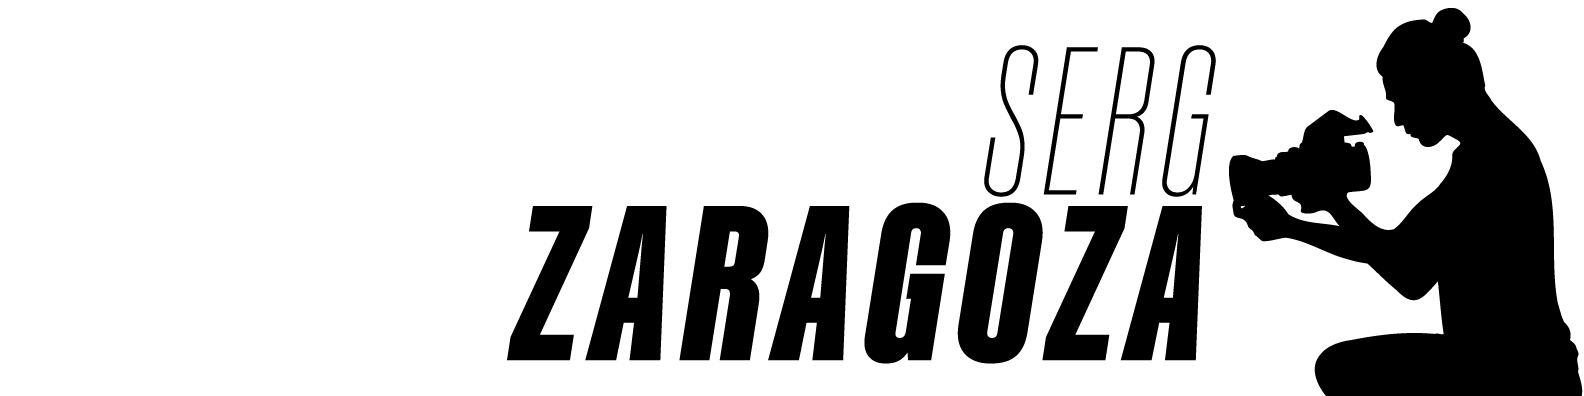 Serg Zaragoza